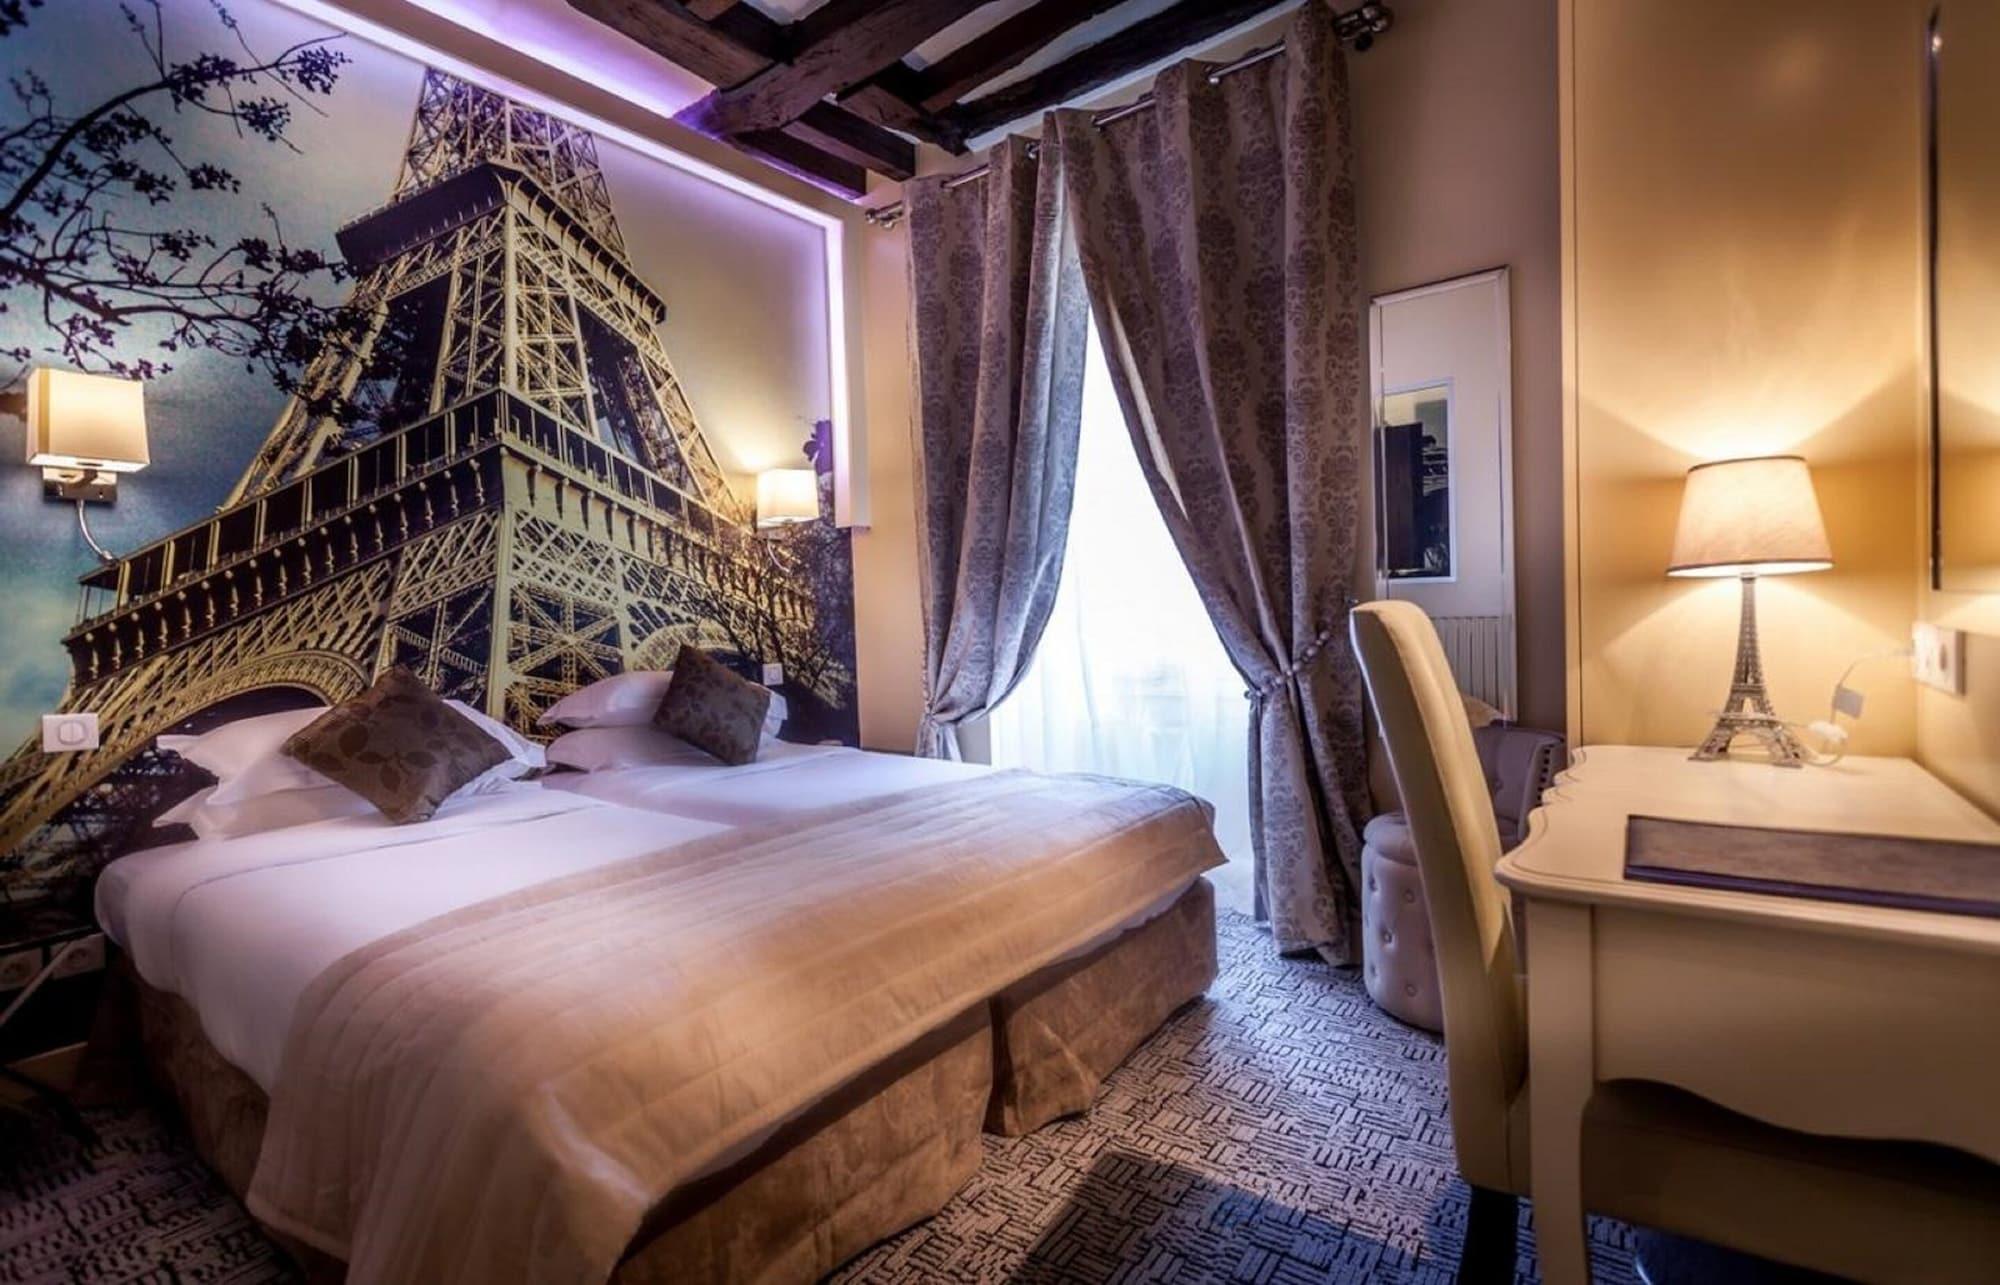 Hotel Ascot Opera Paris Luaran gambar